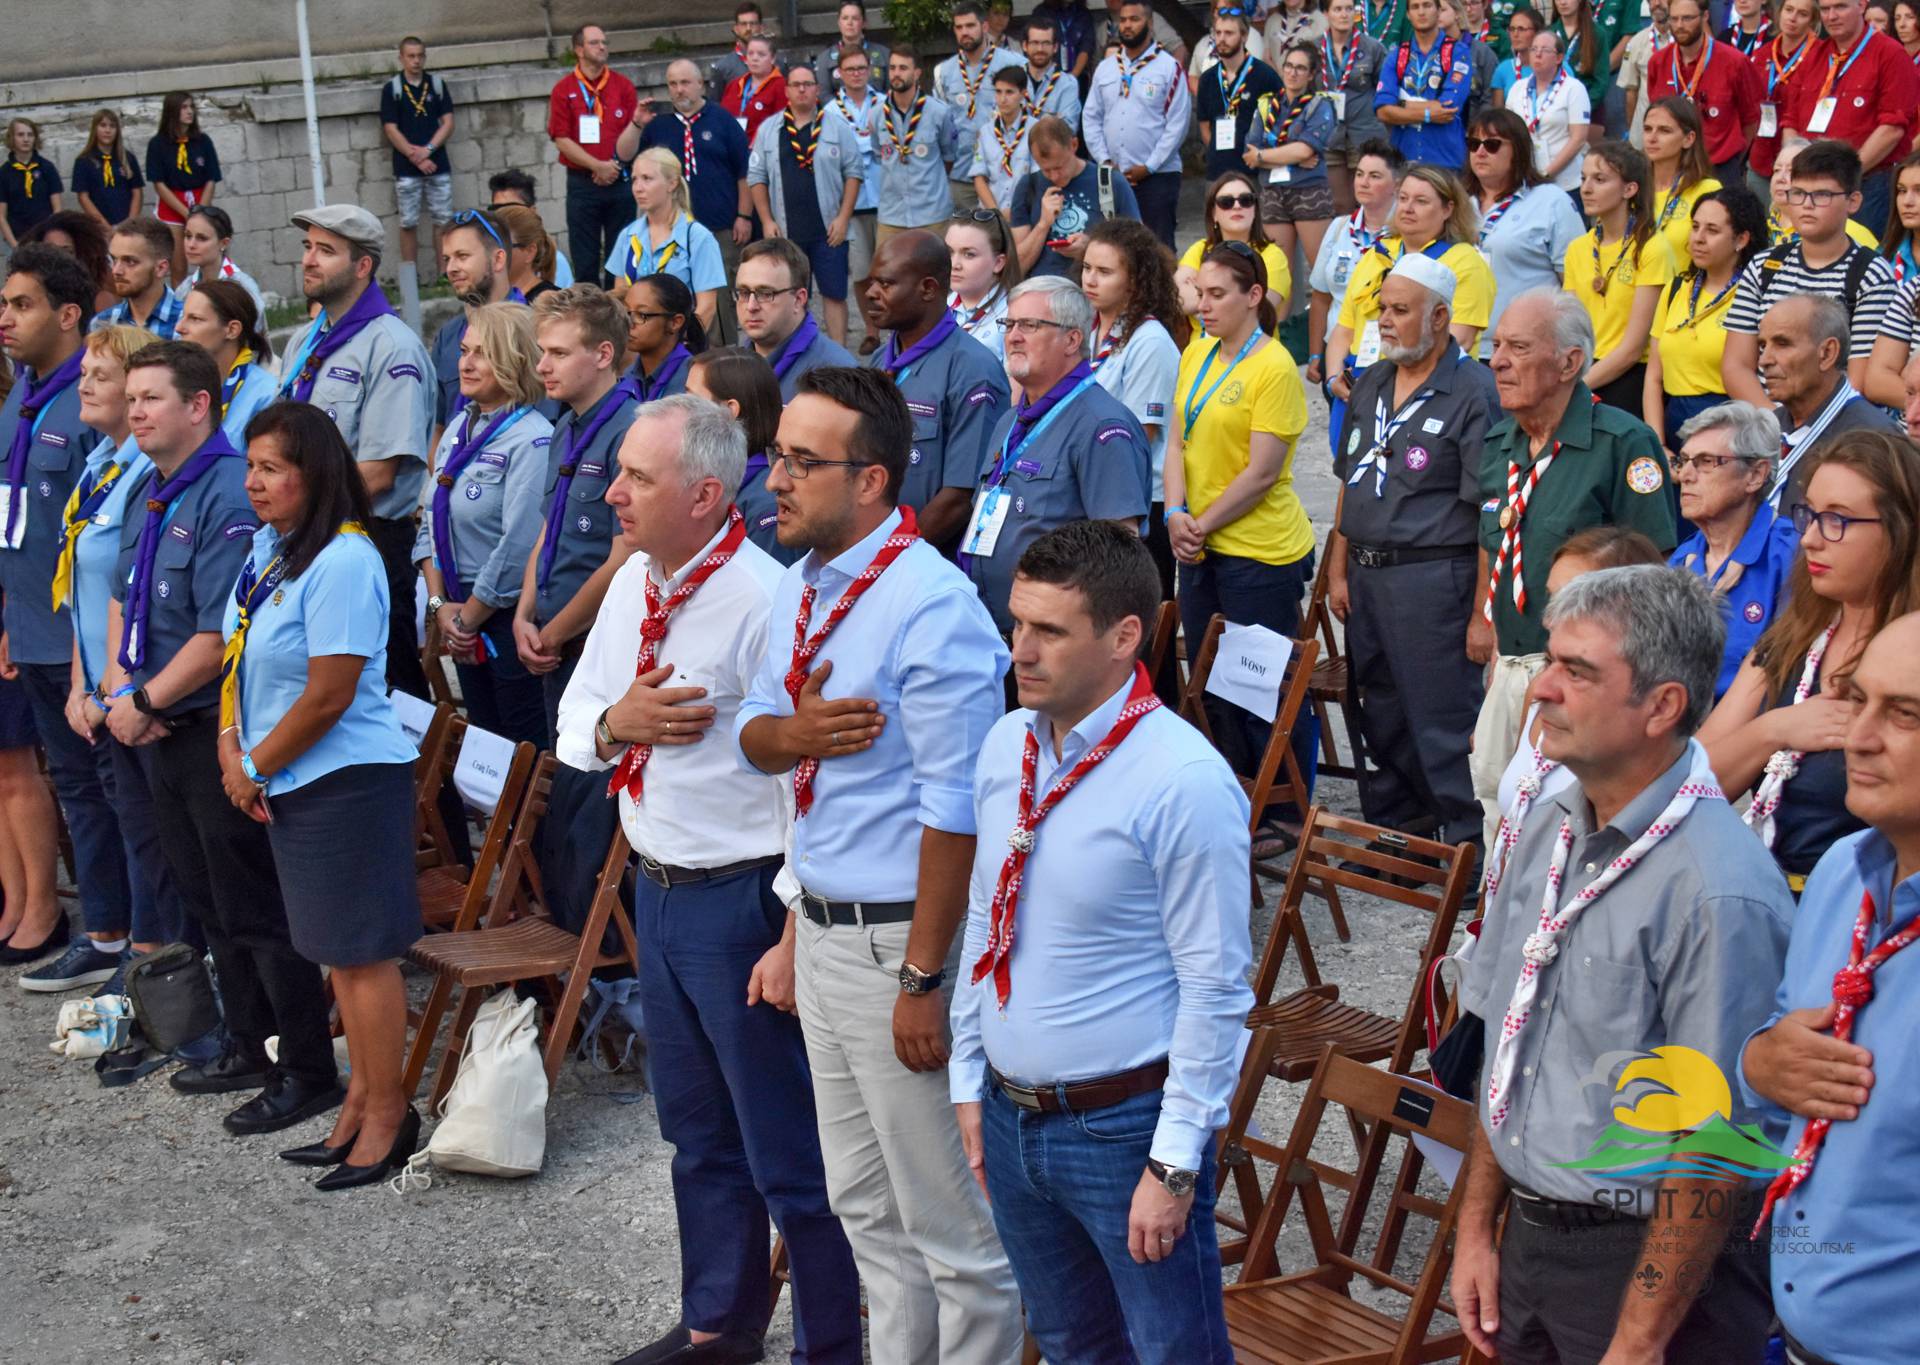 U Splitu otvorena skautska konferencija s 500 izviđača